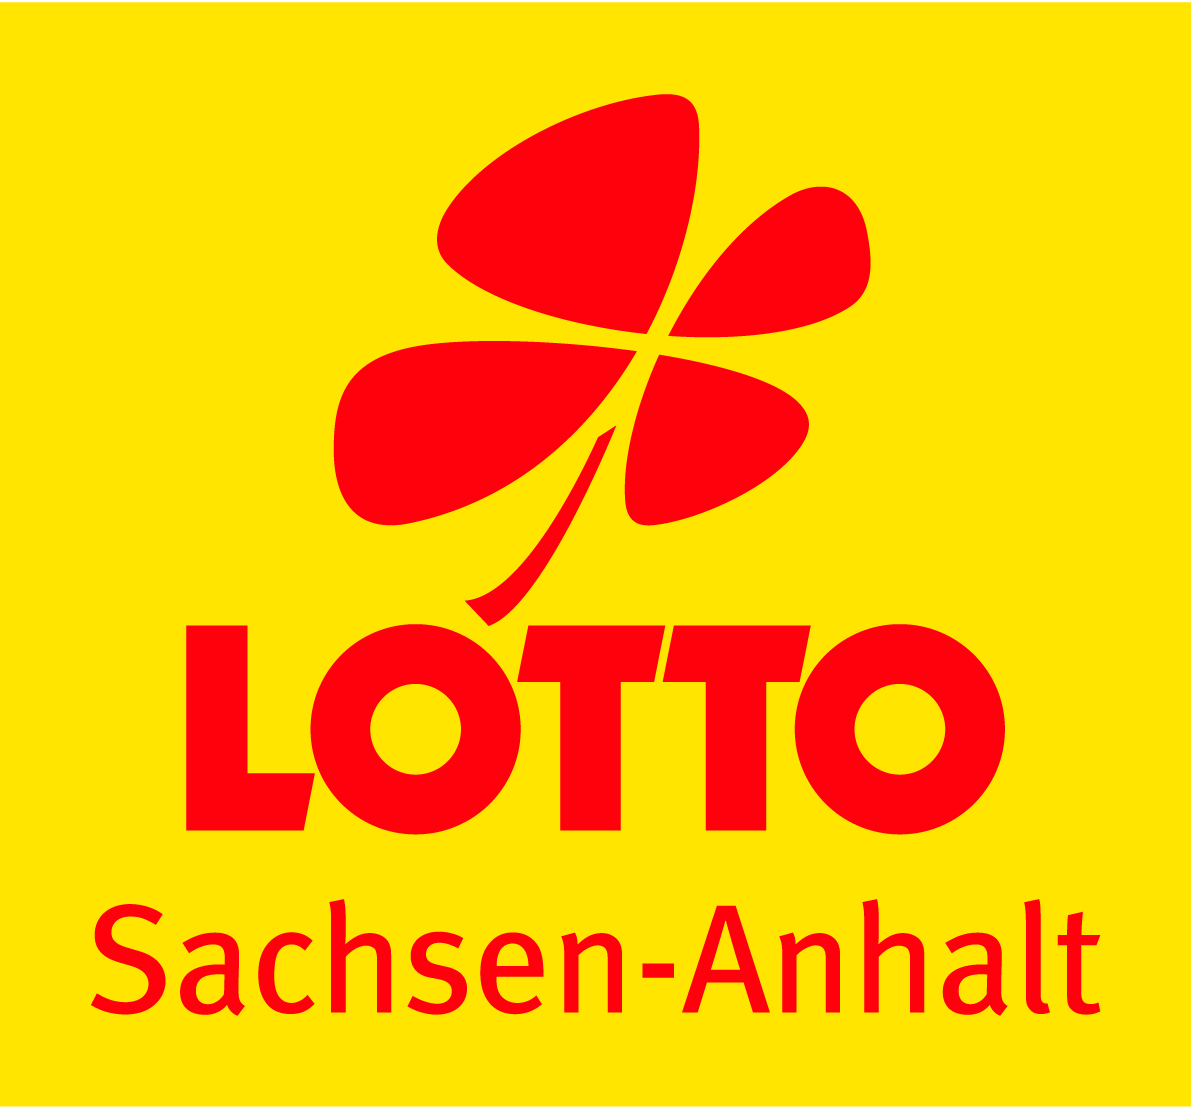 Lotto Sachsen-Anhalt fördert im Jahre 2015 den Nachwuchsleistungssport im Ju-Jutsu Verband Sachsen-Anhalt